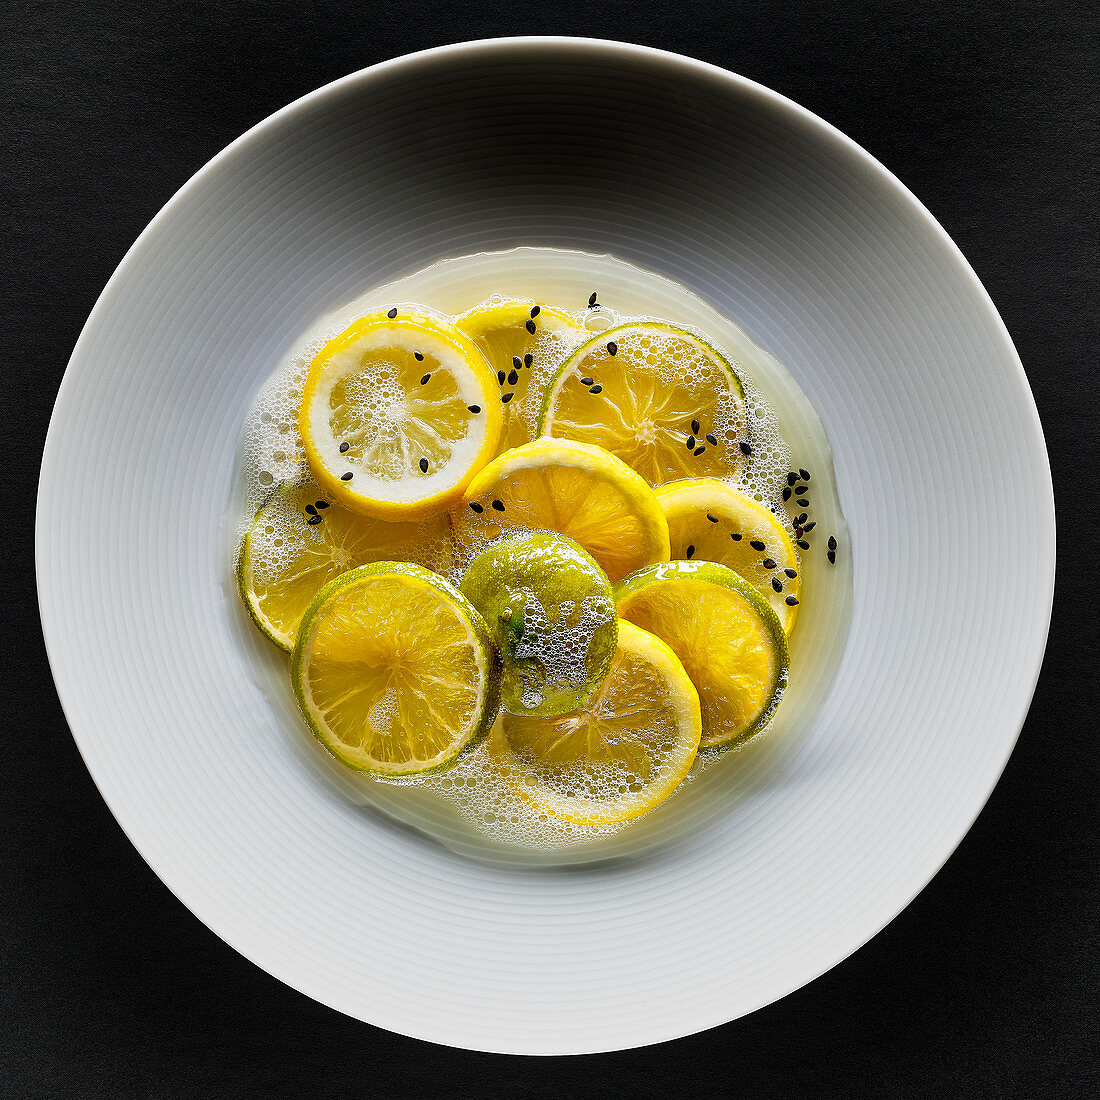 Zitronen und Limetten mit schwarzem Sesam und Schaum